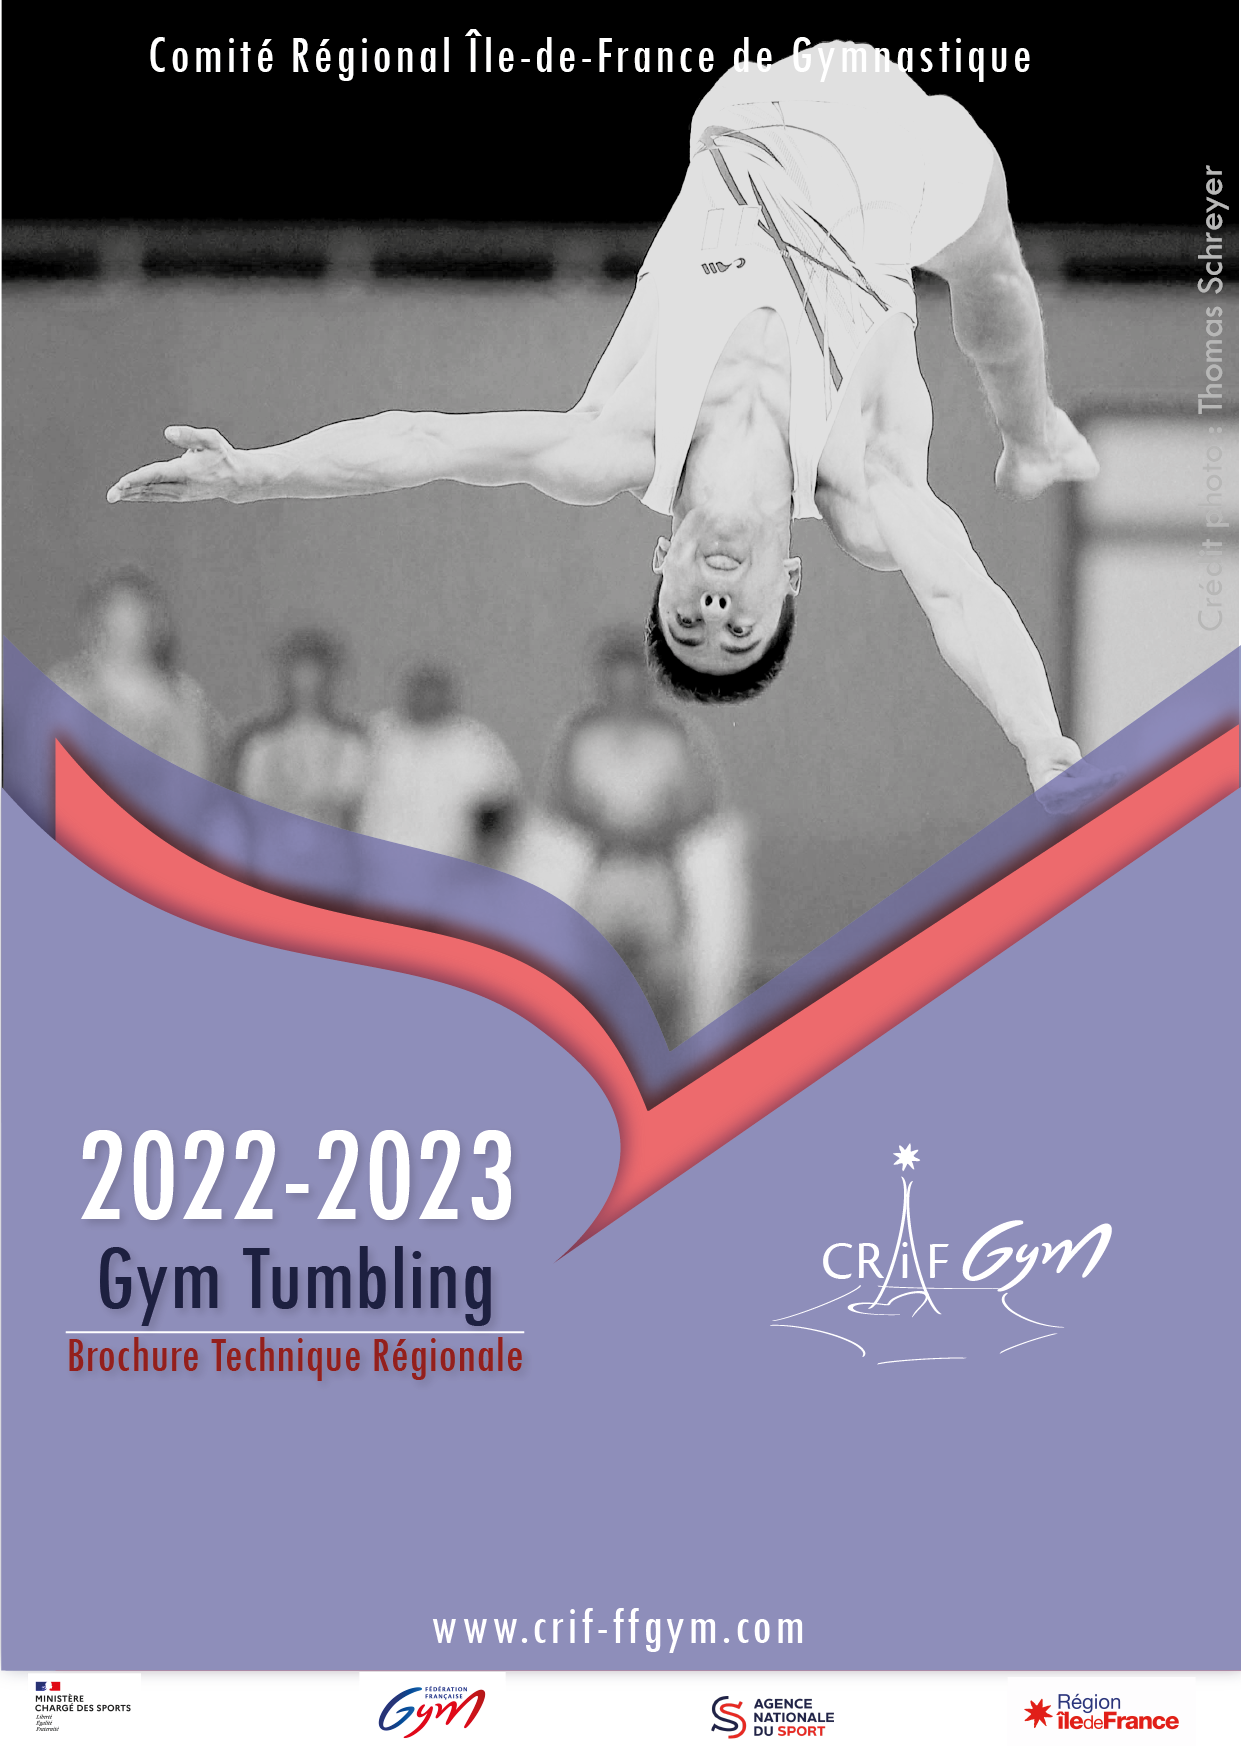 TU : brochure technique régionale 2022/2023